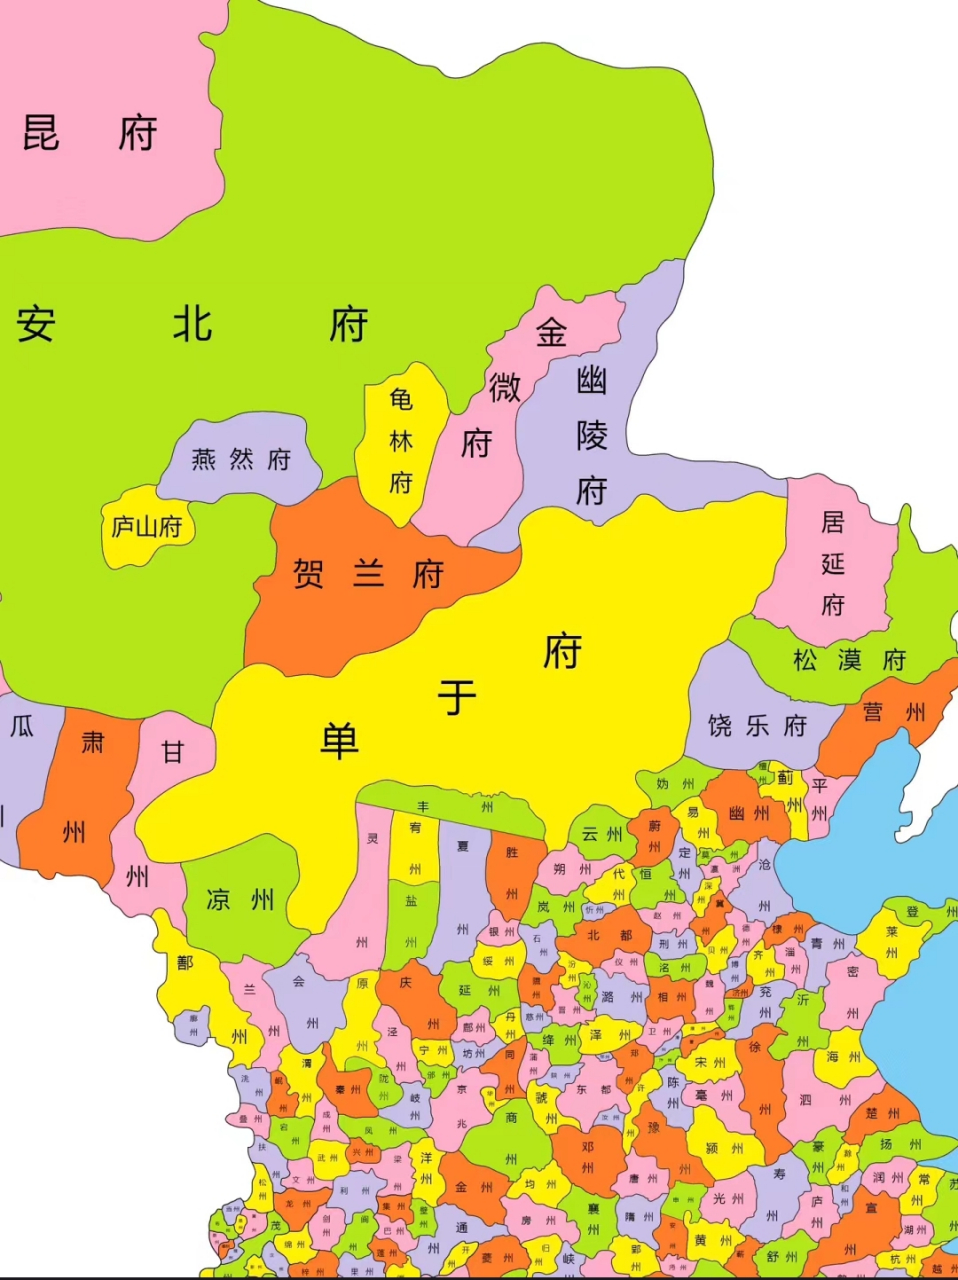 你的家乡在唐朝叫什么名字?(州)[大哈]